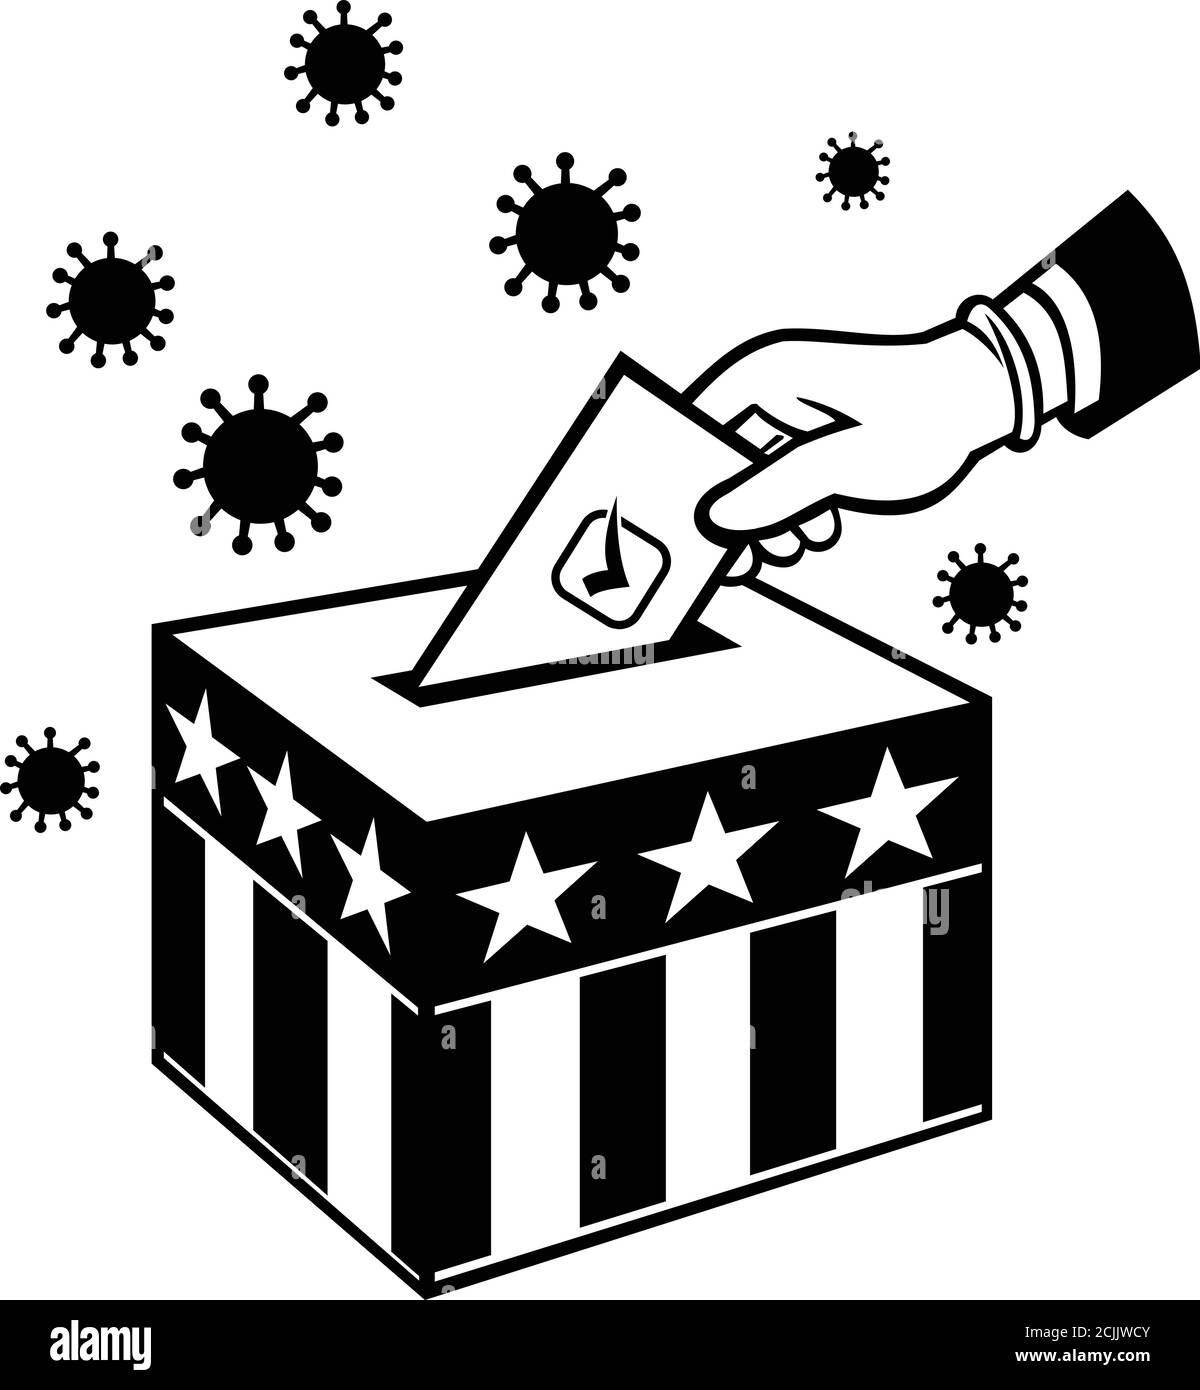 Illustration de style rétro d'un électeur américain avec main de gant vote lors du confinement du coronavirus du covid-19 pandémique, ce qui place le vote au scrutin Boîte avec U Illustration de Vecteur